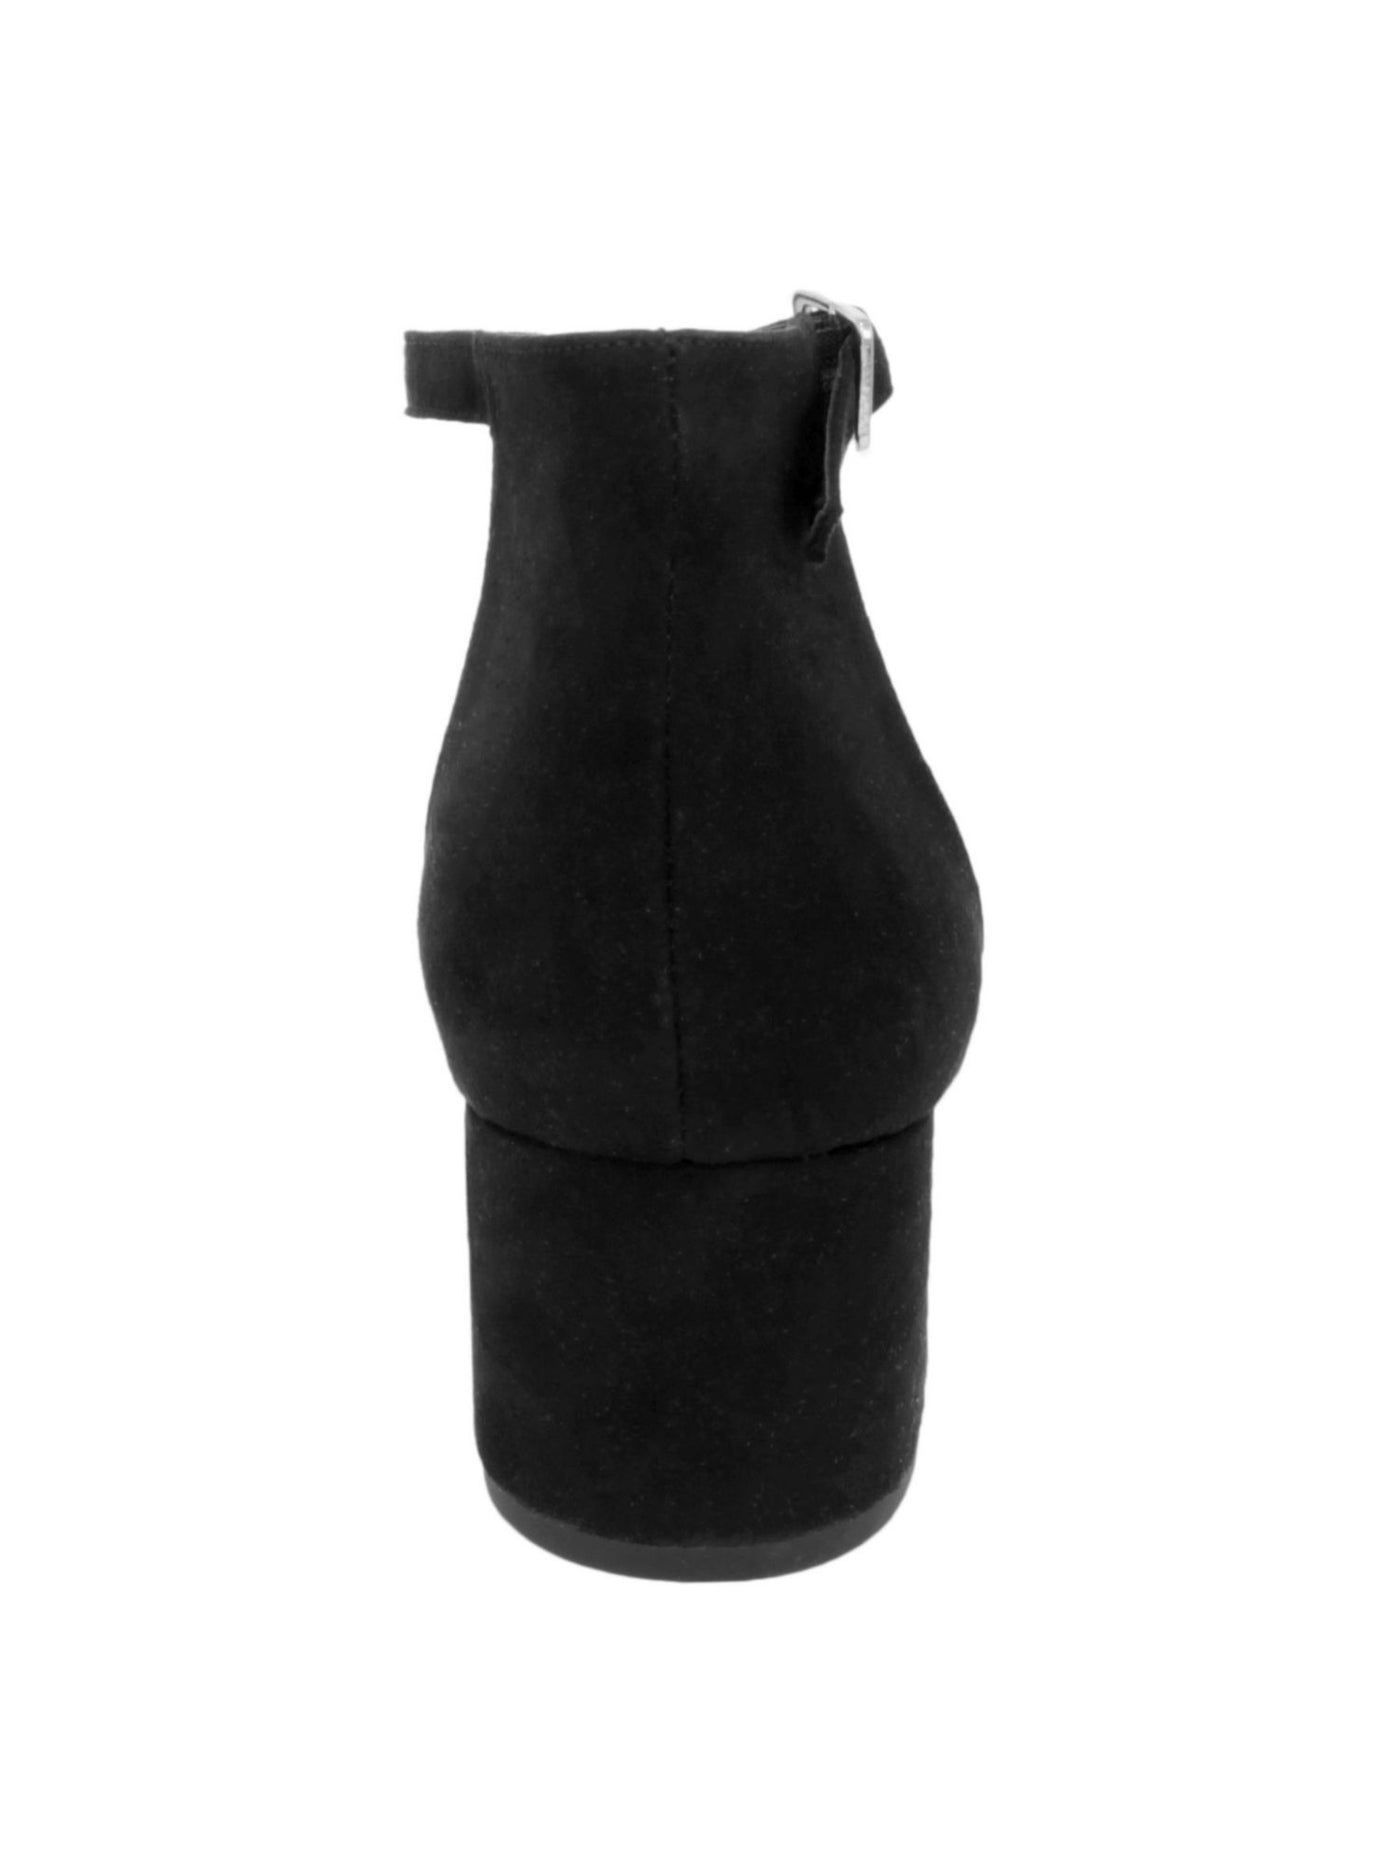 SUGAR Womens Black Noelle Low Open Toe Block Heel Buckle Dress Sandals 6.5 M